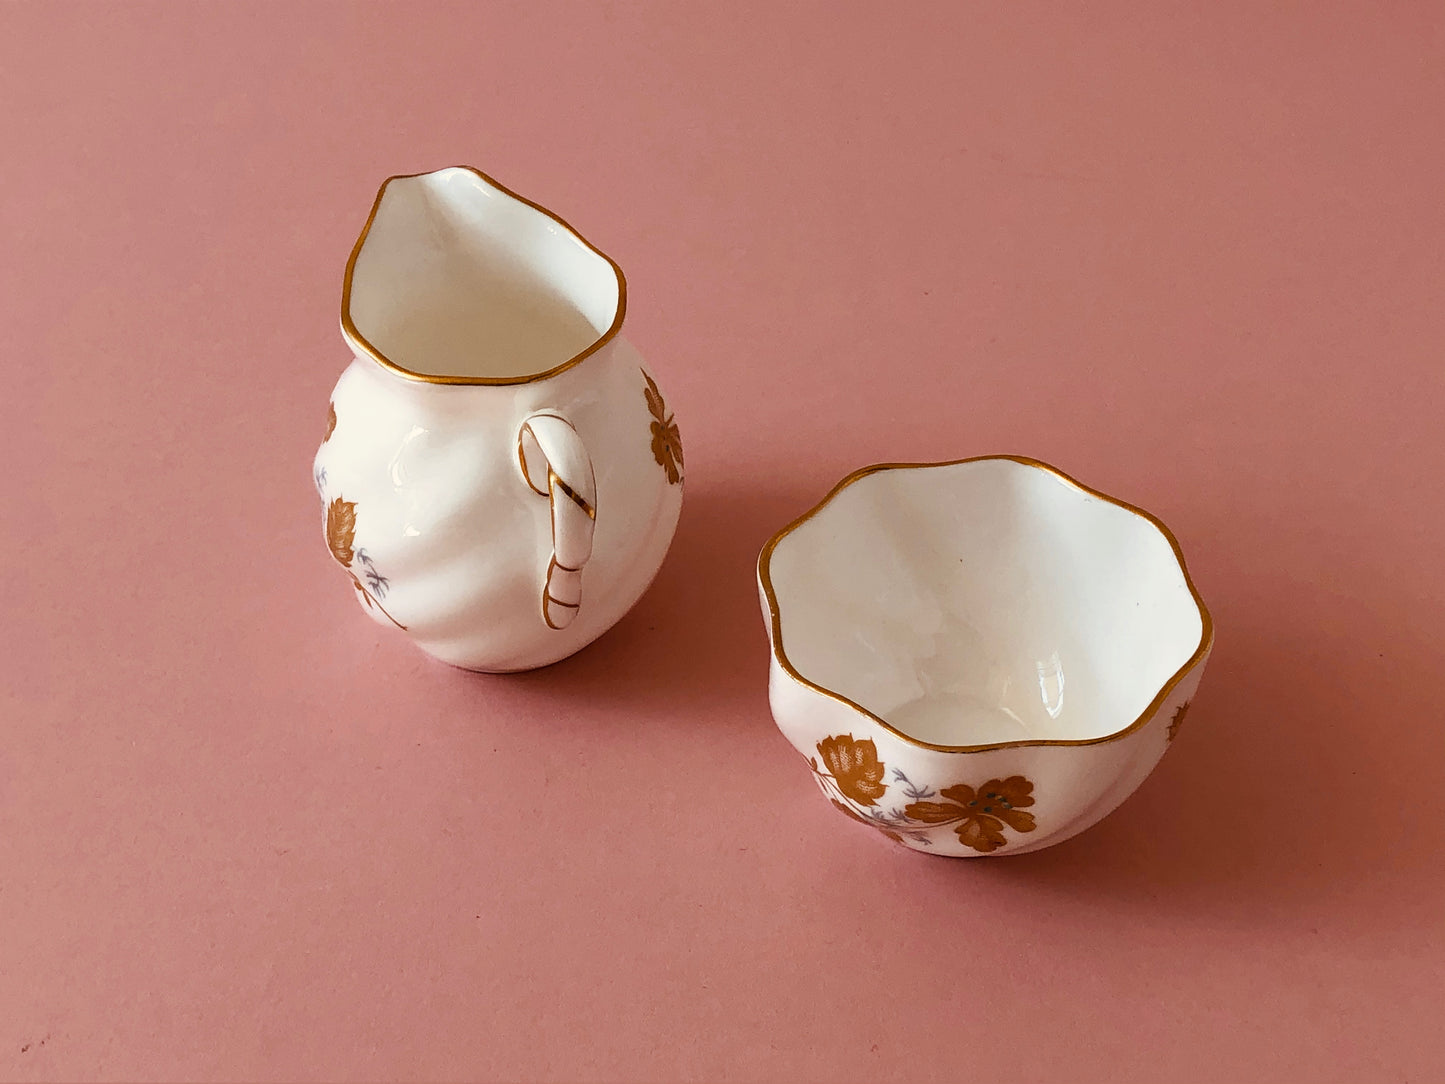 Master Dane - Ceramic Sugar and Creamer Set by Coleport